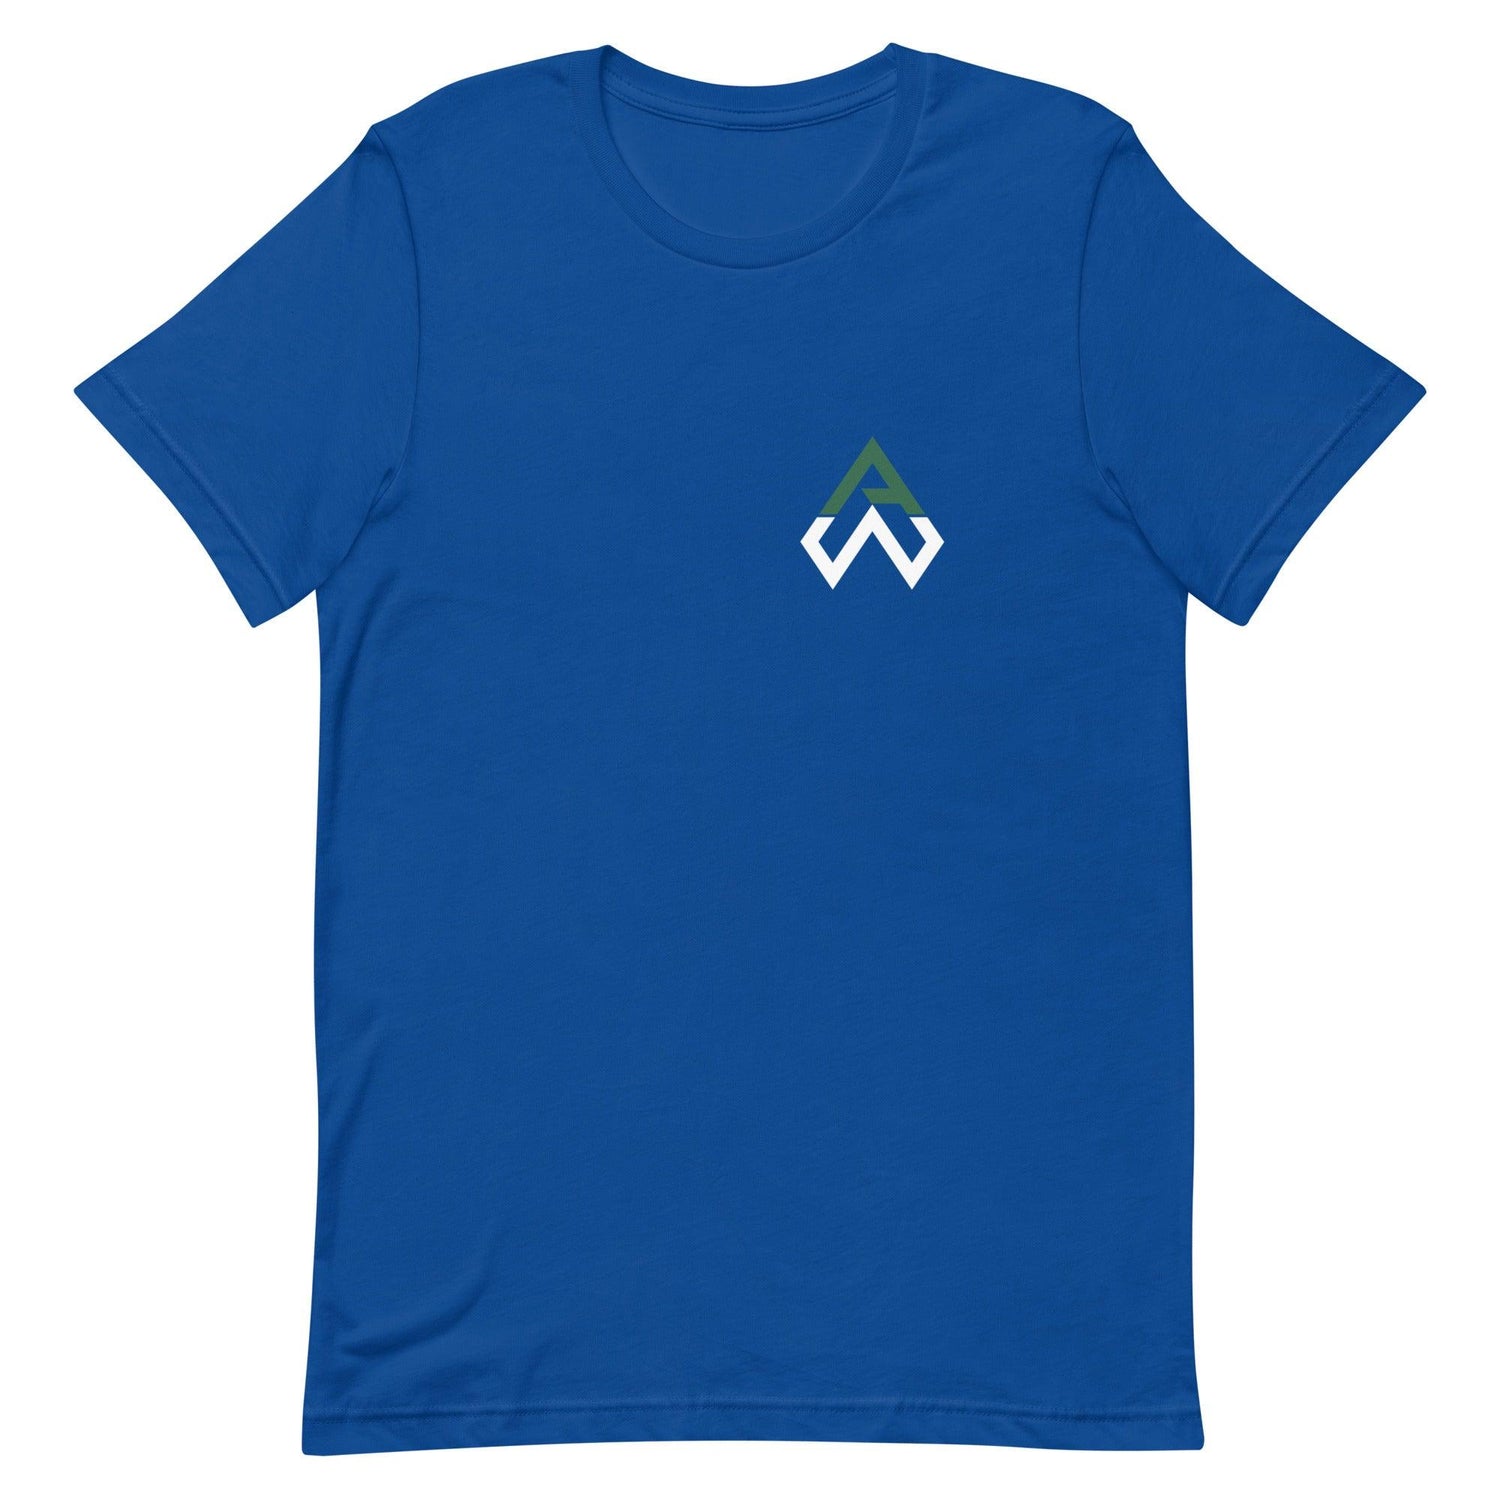 Aidan Weaver “AW” t-shirt - Fan Arch